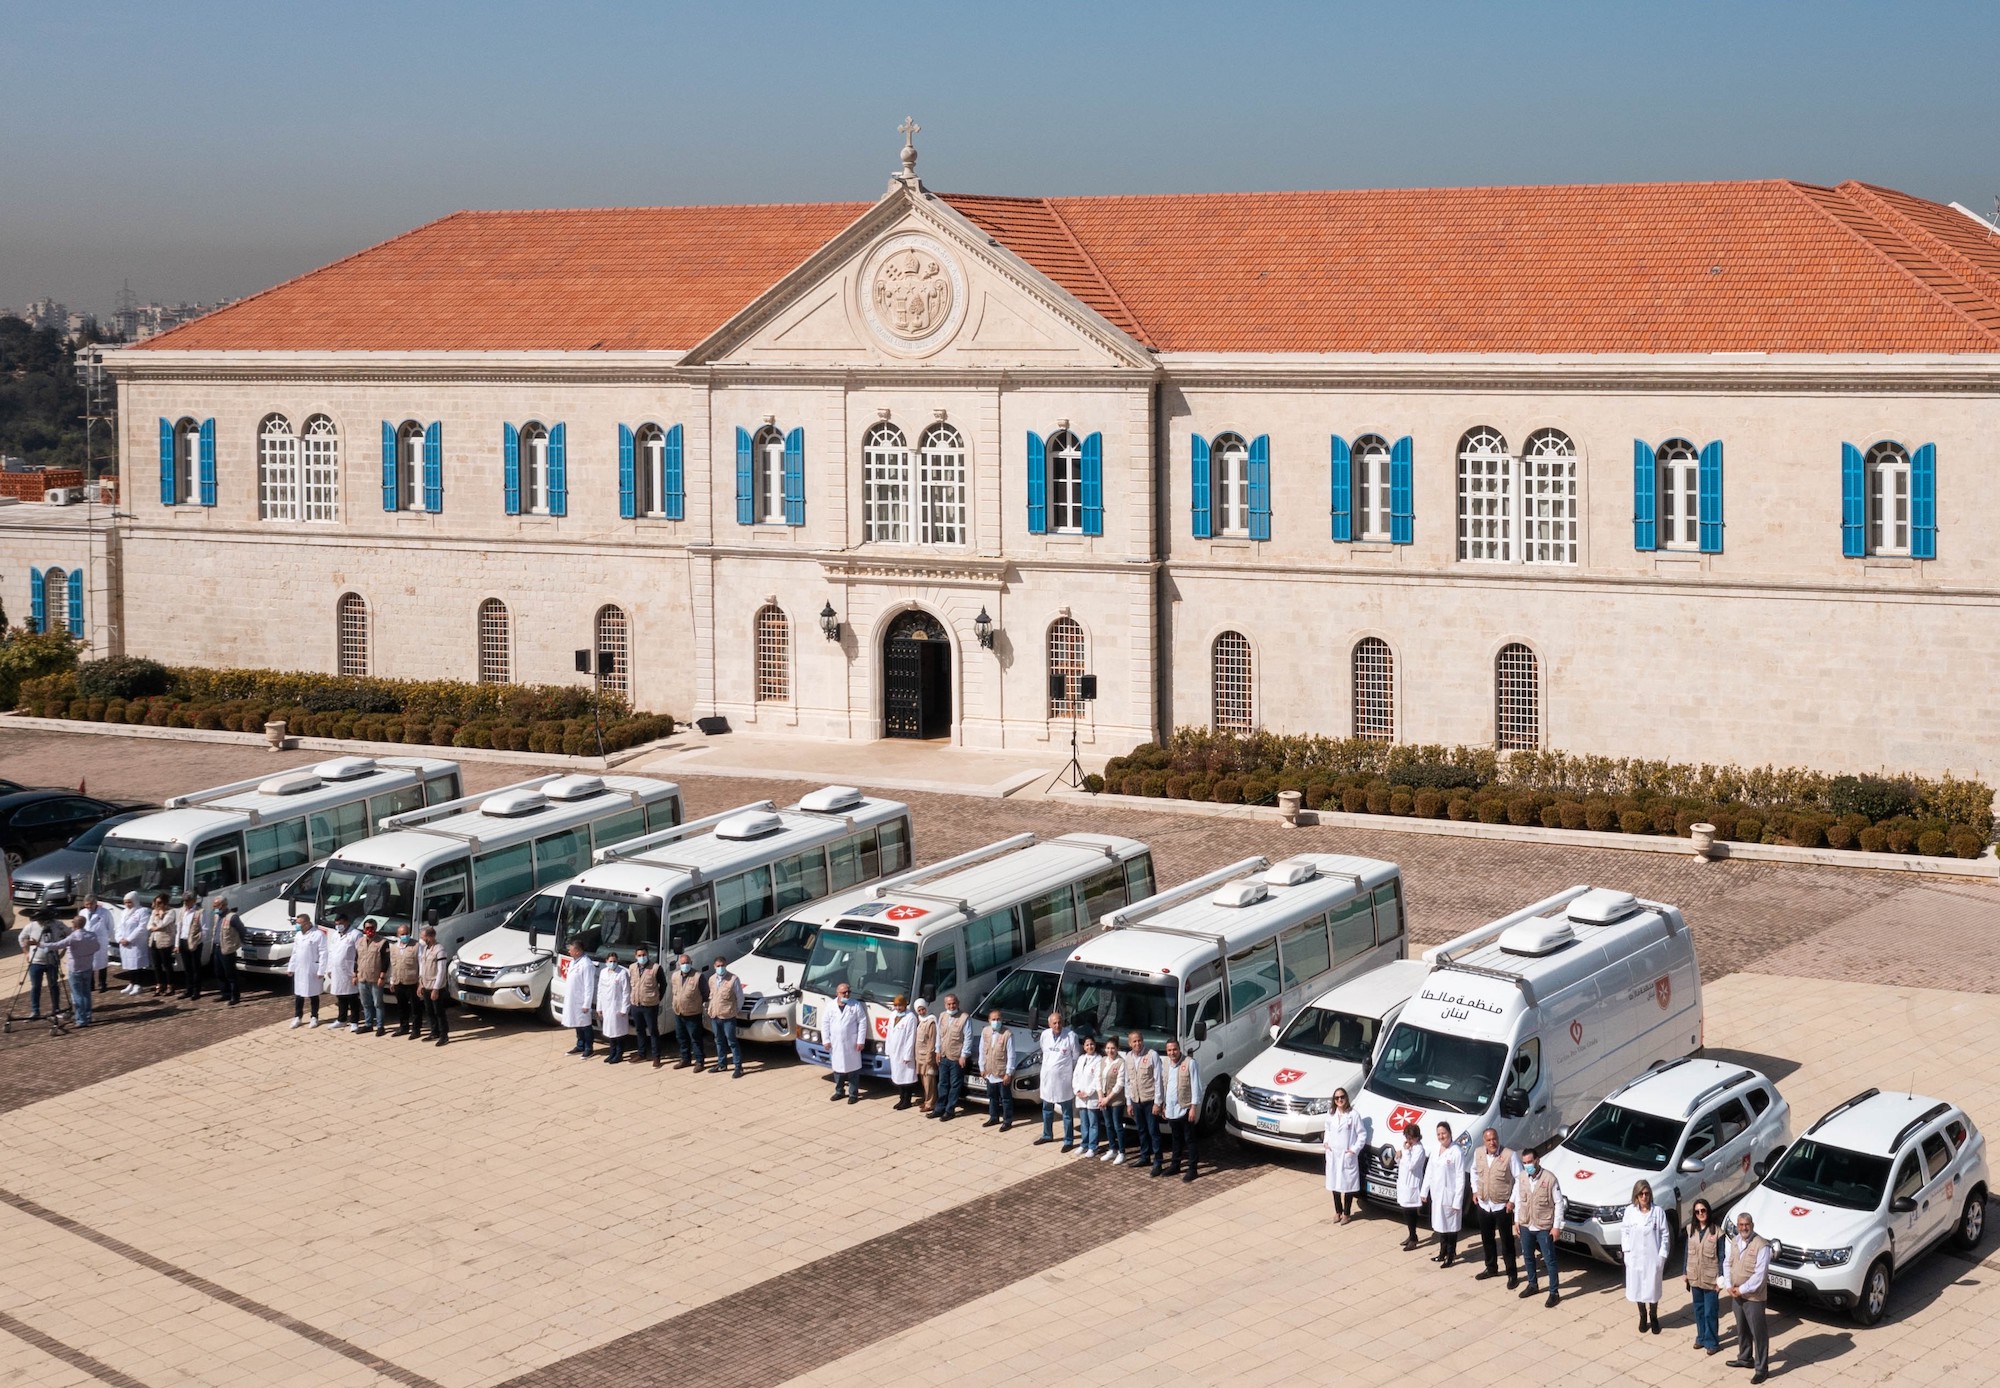 Der Malteserorden Libanon eröffnet sein neues Gesundheitszentrum in der Nähe von Beirut im Zeichen der nationalen Einheit